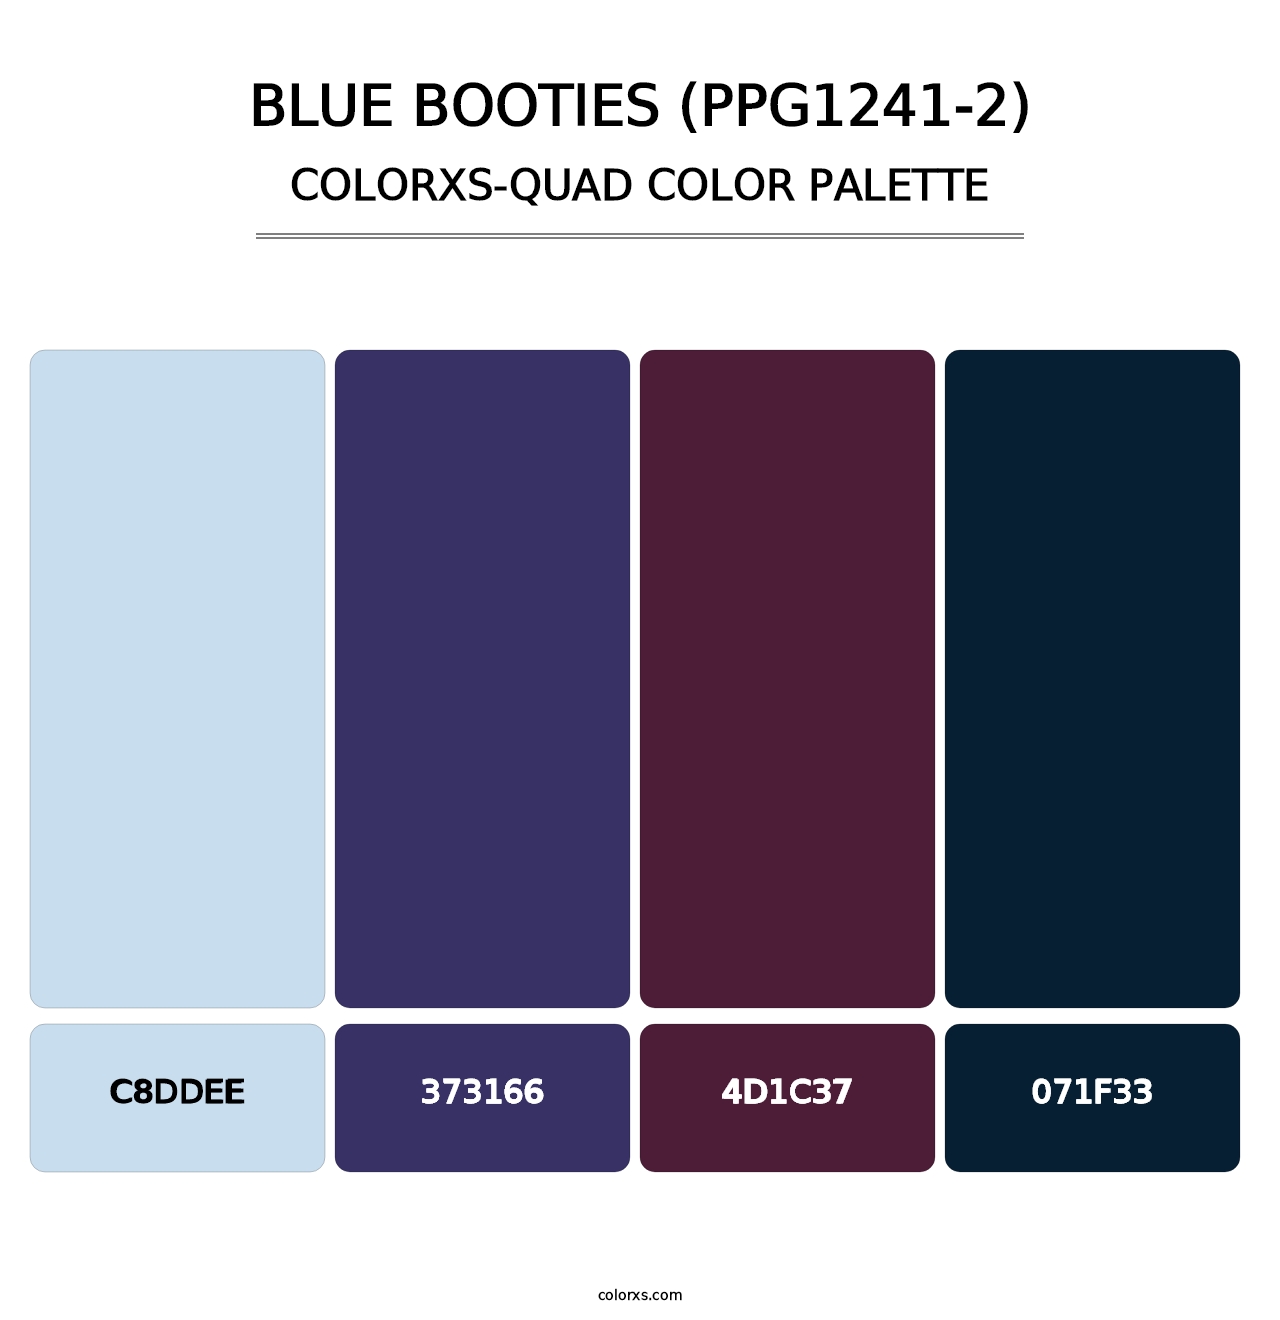 Blue Booties (PPG1241-2) - Colorxs Quad Palette